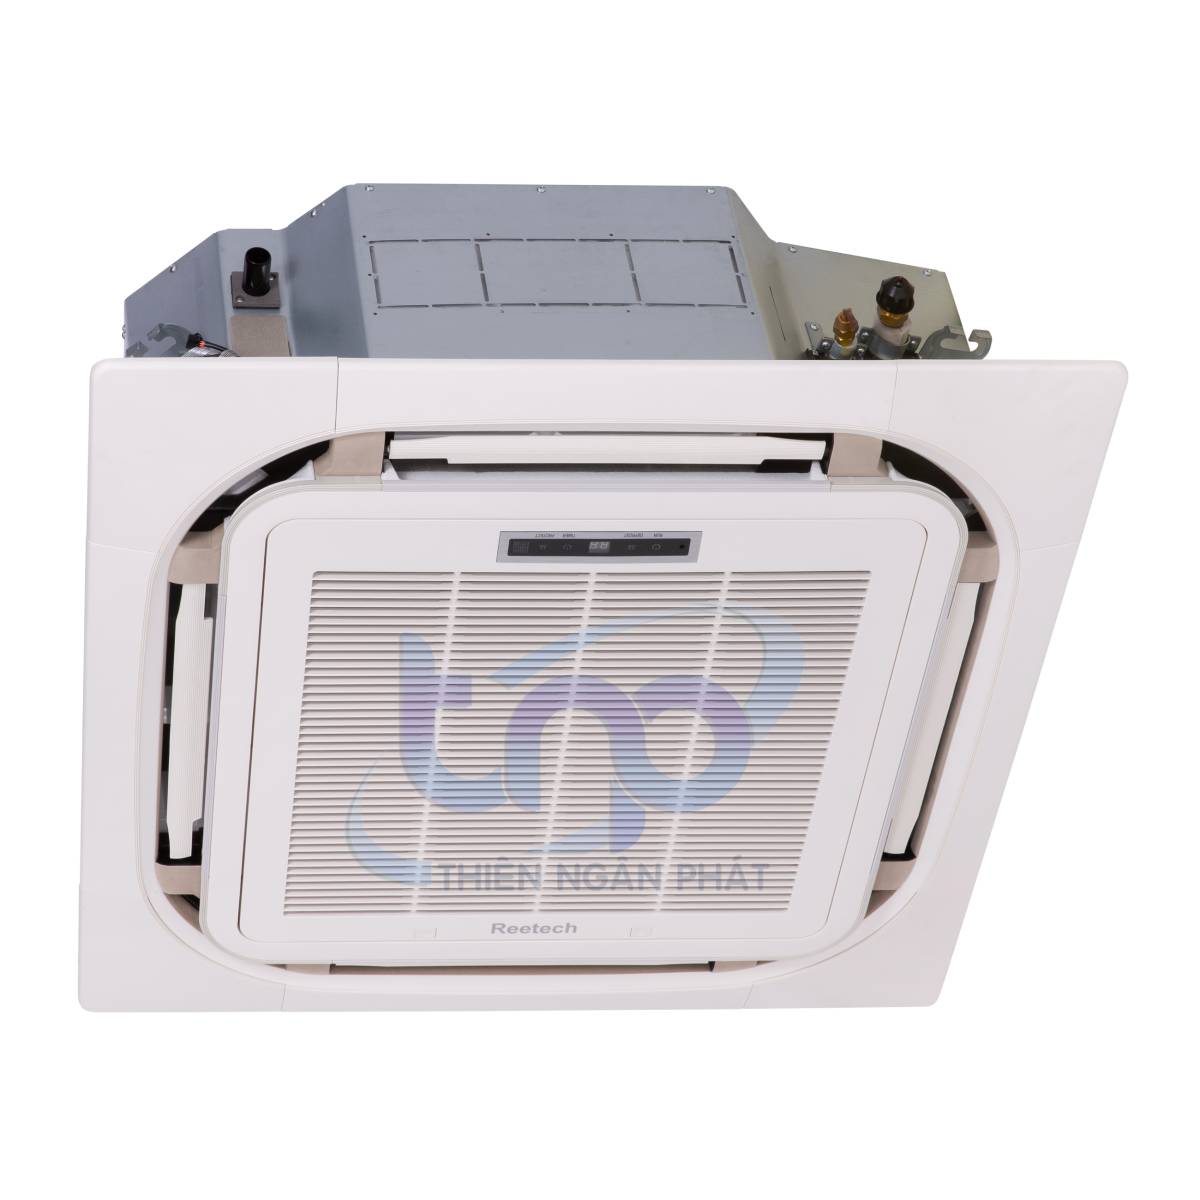 Thiết kế sang trọng của máy lạnh âm trần Reetech giá siêu rẻ chất lượng Am-tran-Inverter-Reetech